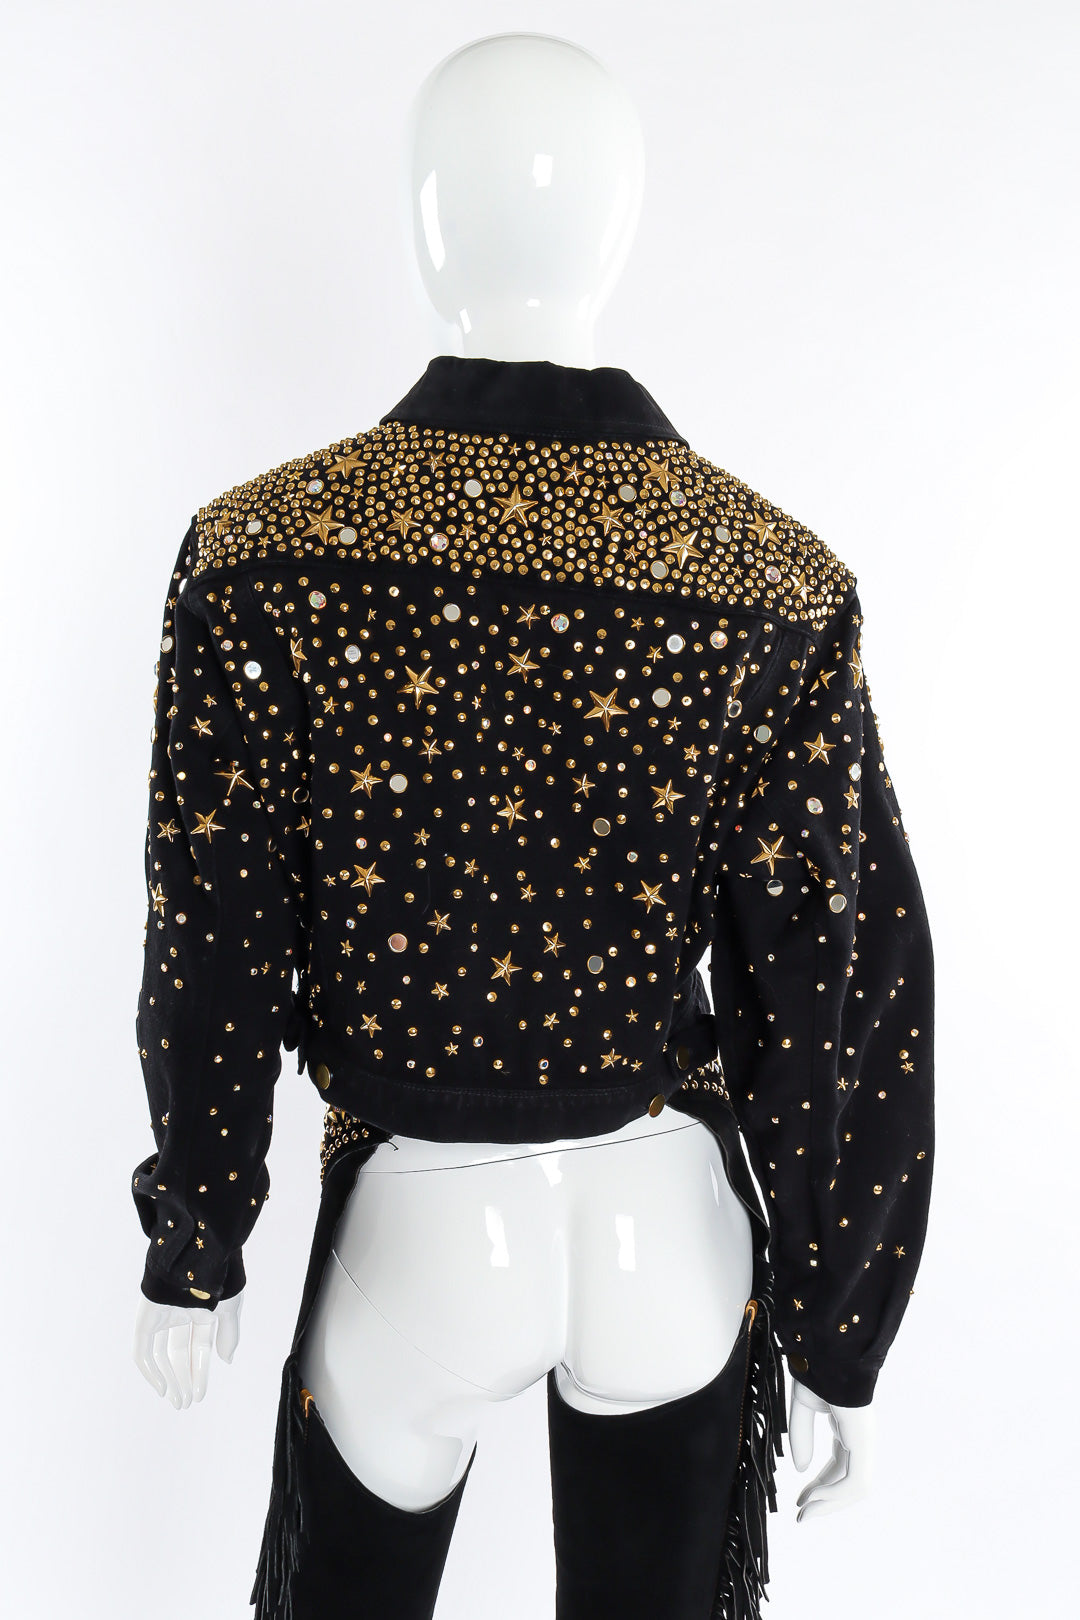 Studded denim jacket by Katherine Baumann mannequin back @recessla